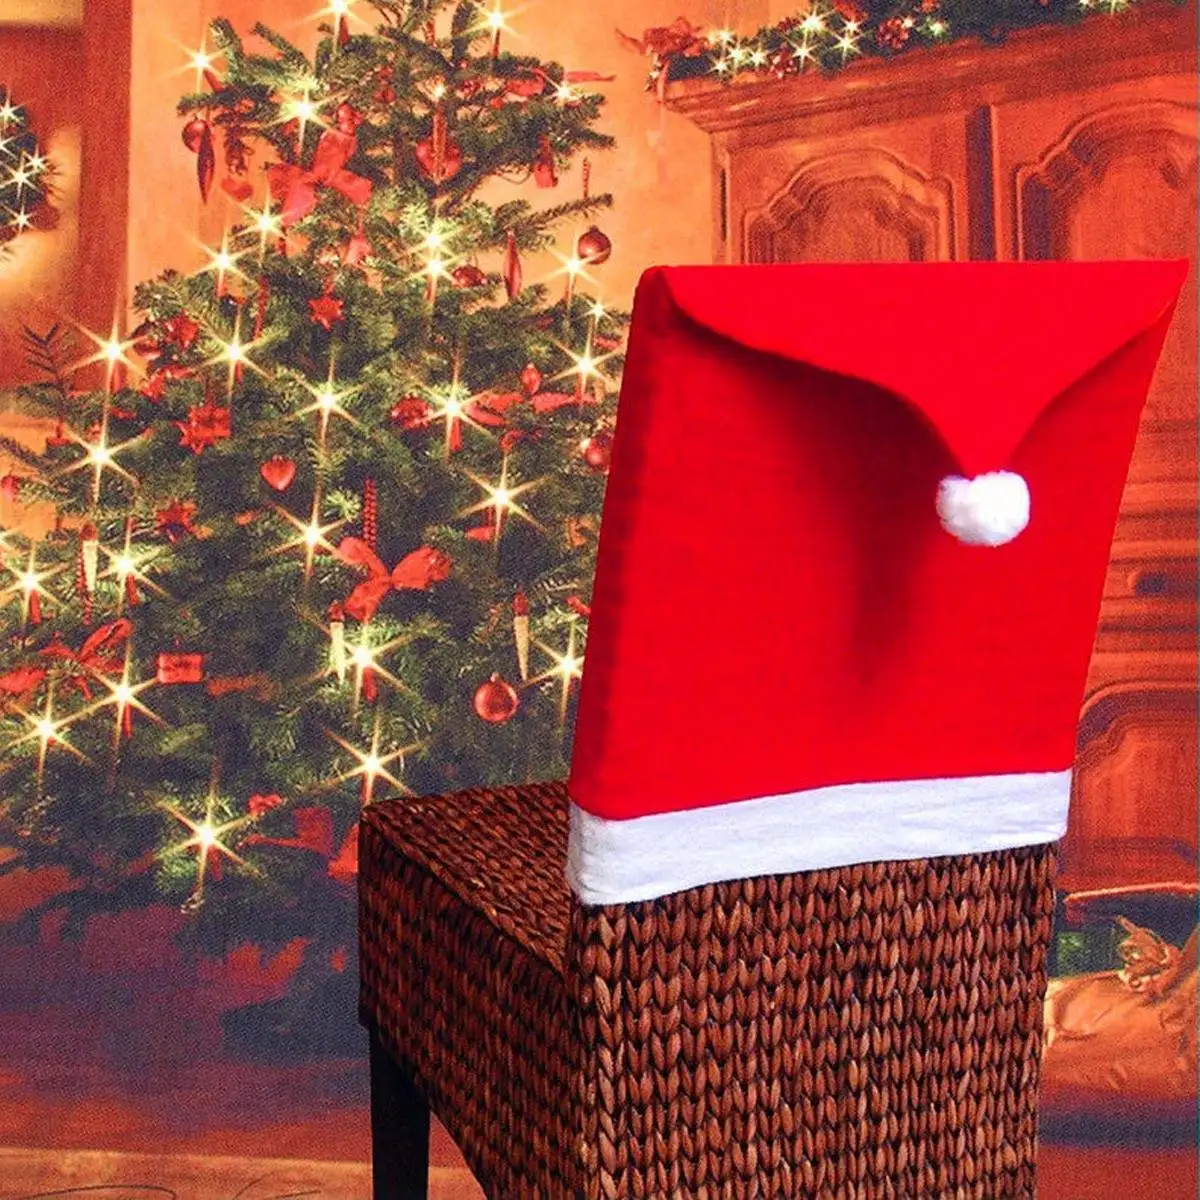 1-12 шт. рождественские чехлы на стулья Санта Клаус шляпа ужин обеденный стул задняя крышка Рождественский Декор для домашнего стола новогодние принадлежности